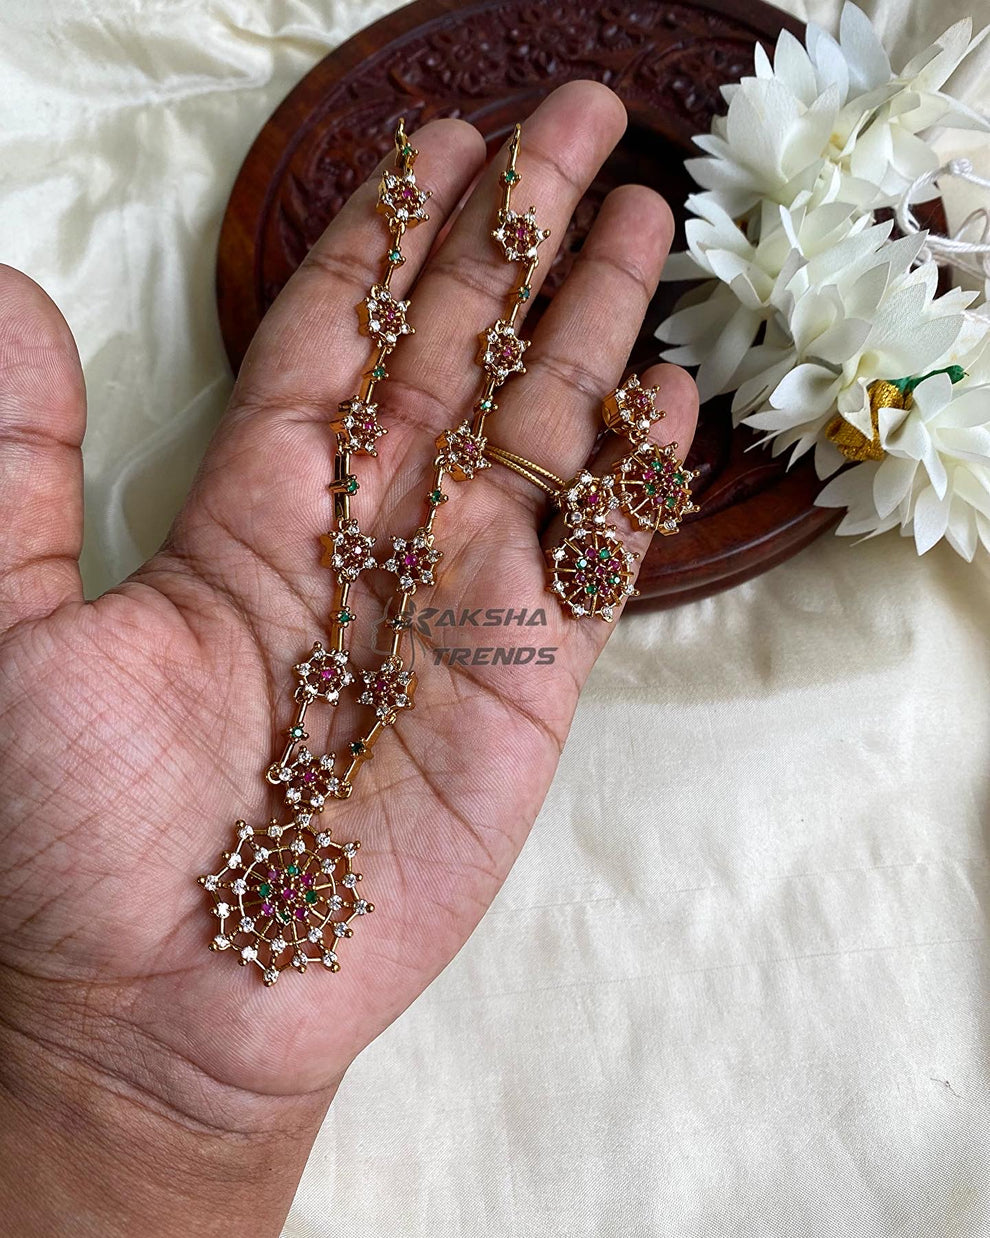 Floral Nakshatra diamond necklace Aksha Trends 